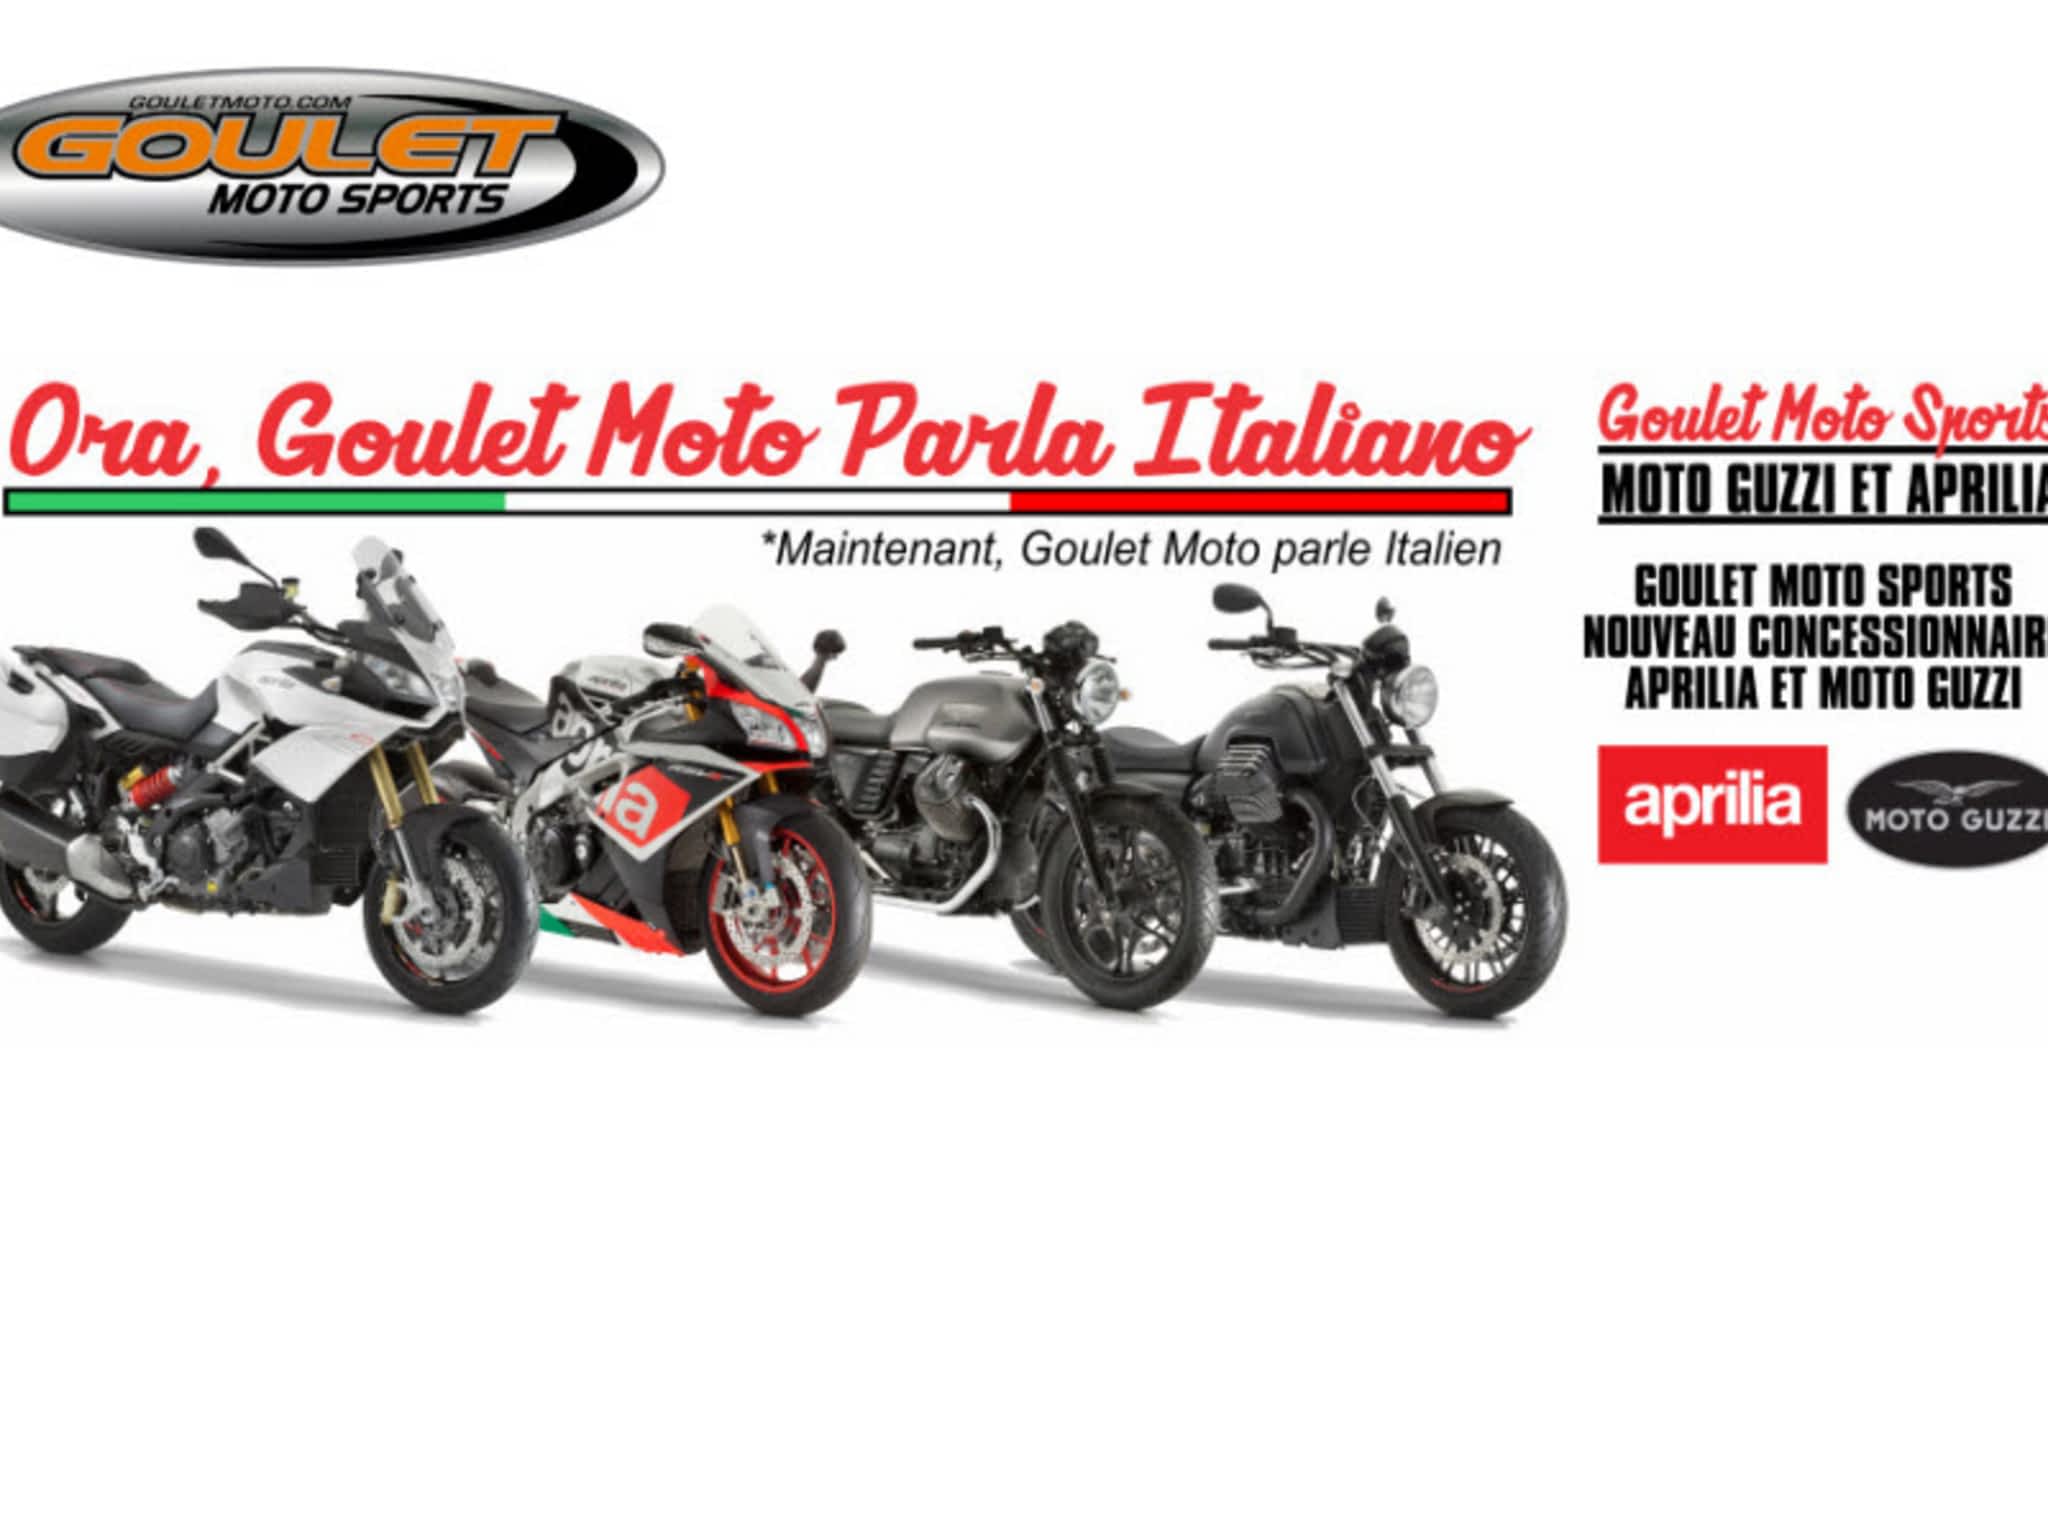 photo Goulet Moto Sports